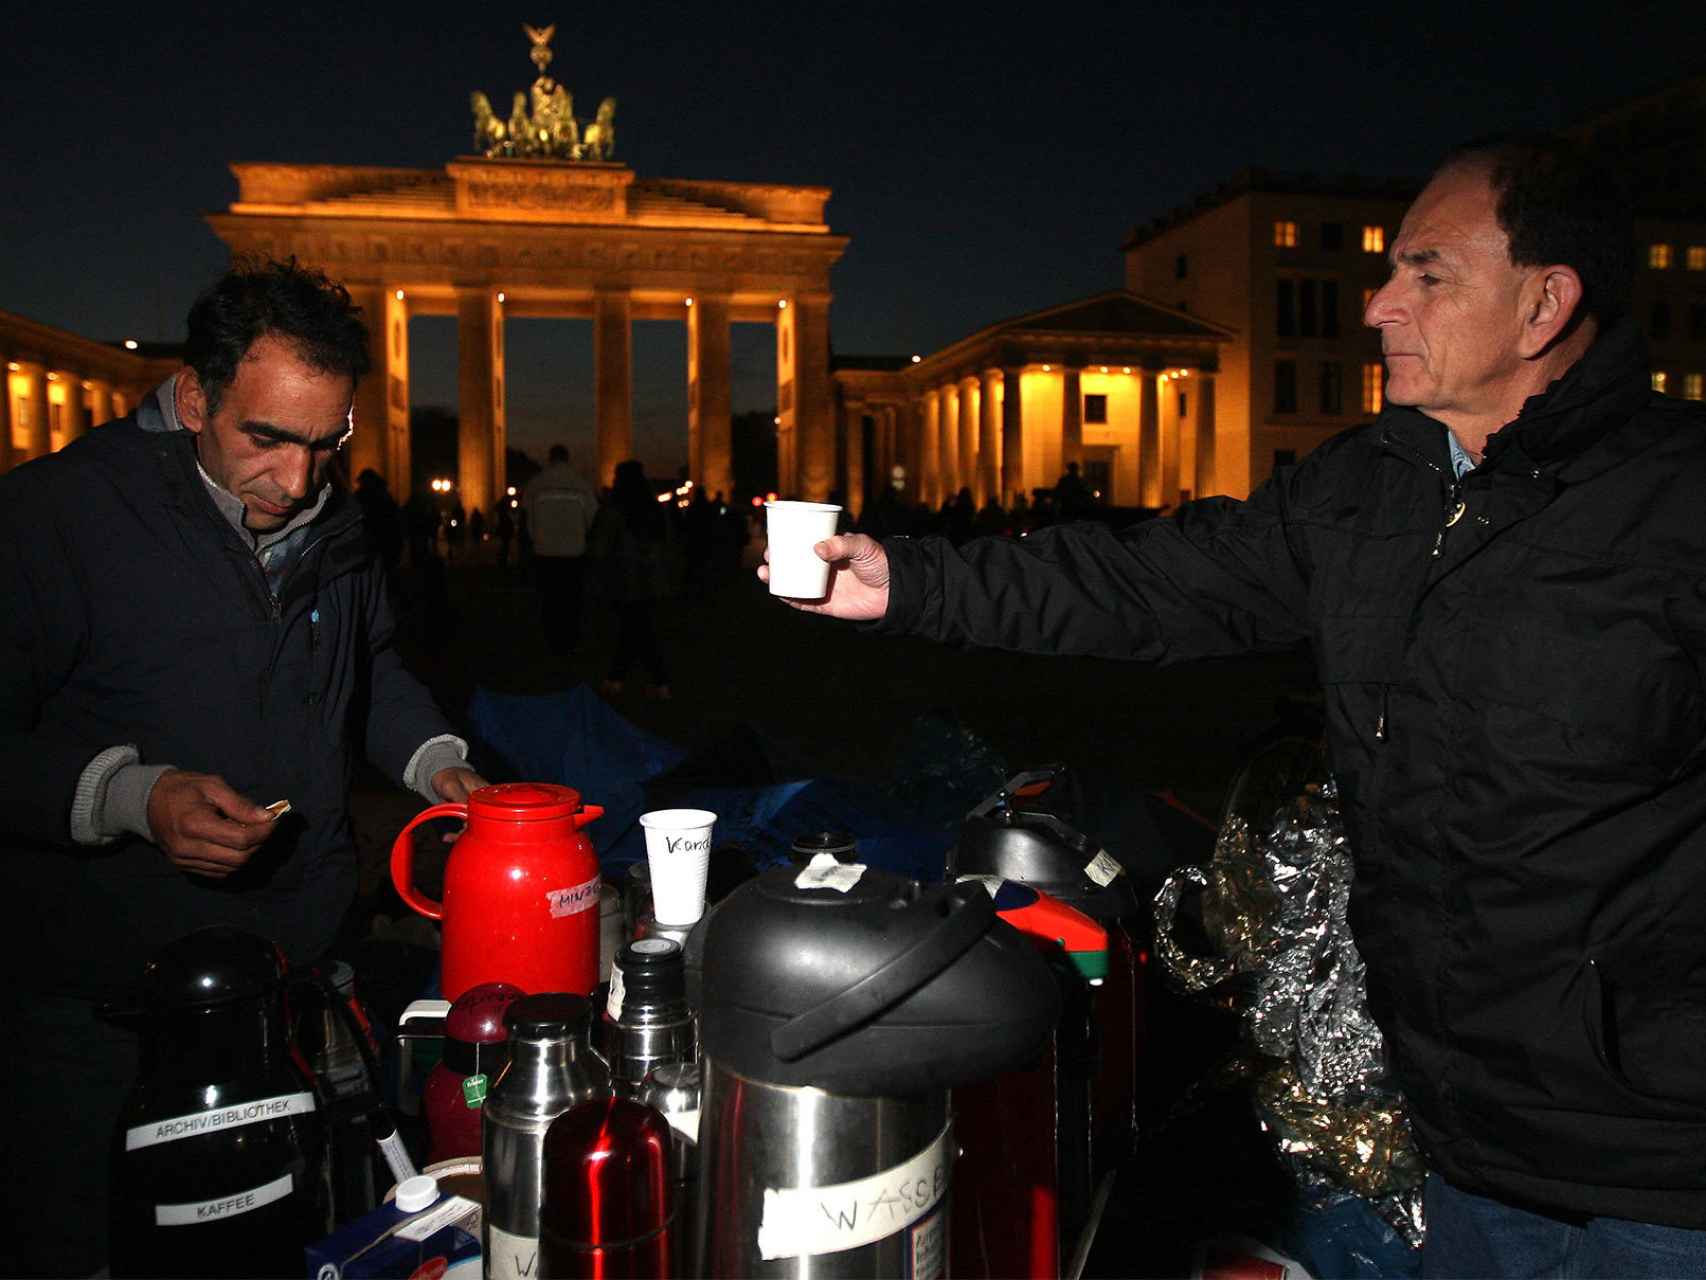 Un voluntario sirve un té a un refugiado en la Puerta de Brandeburgo en Berlín, Alemania.